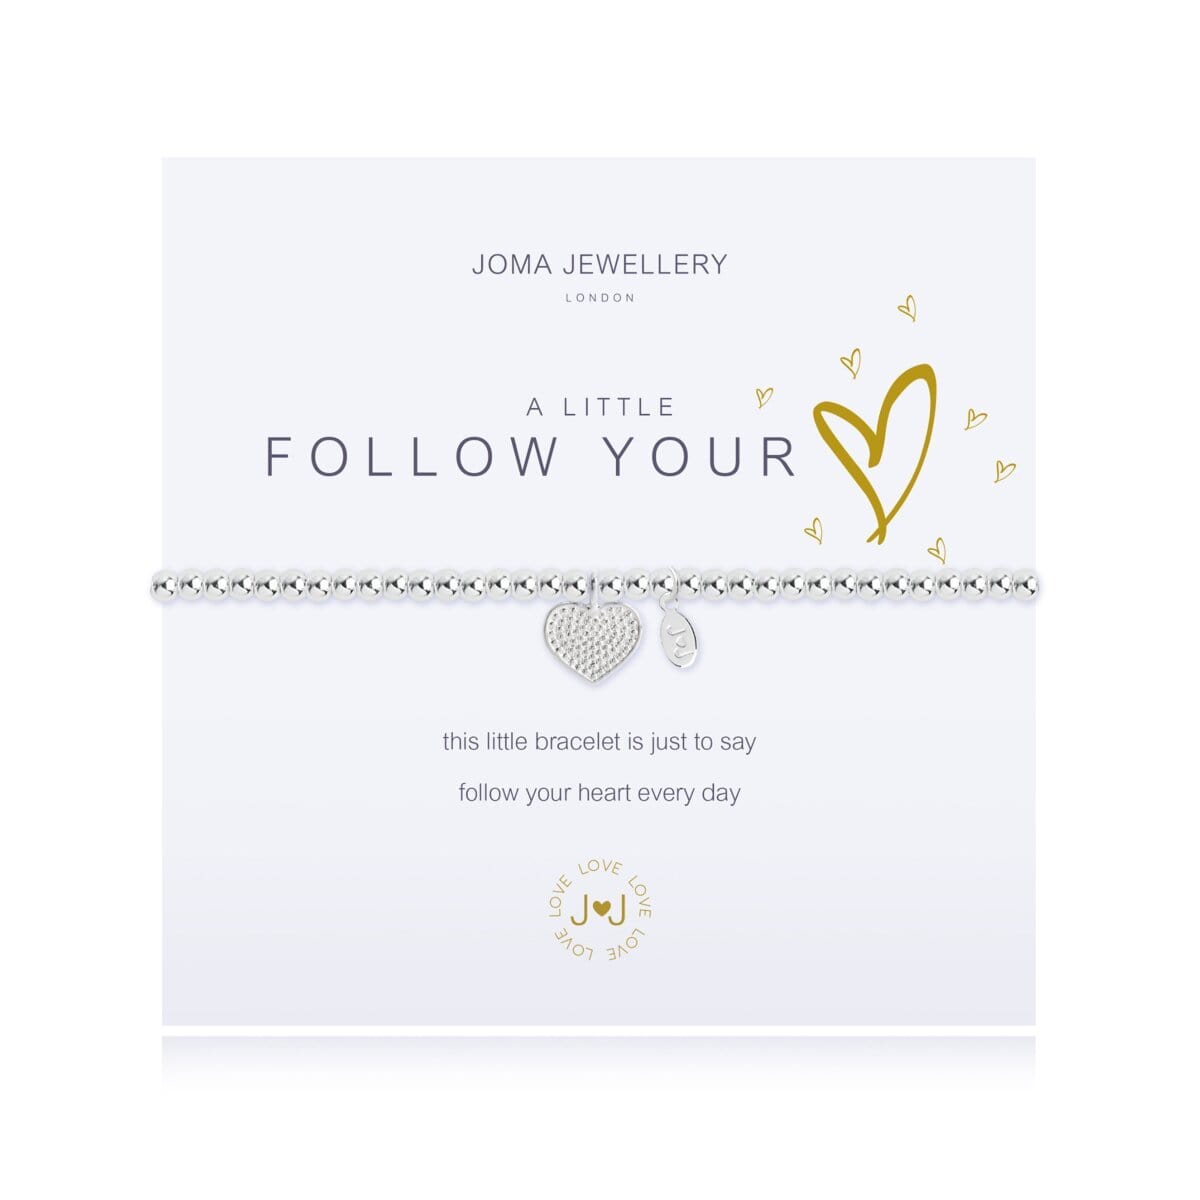 Joma Jewellery Bracelet Joma Jewellery Bracelet - a little Follow Your Heart